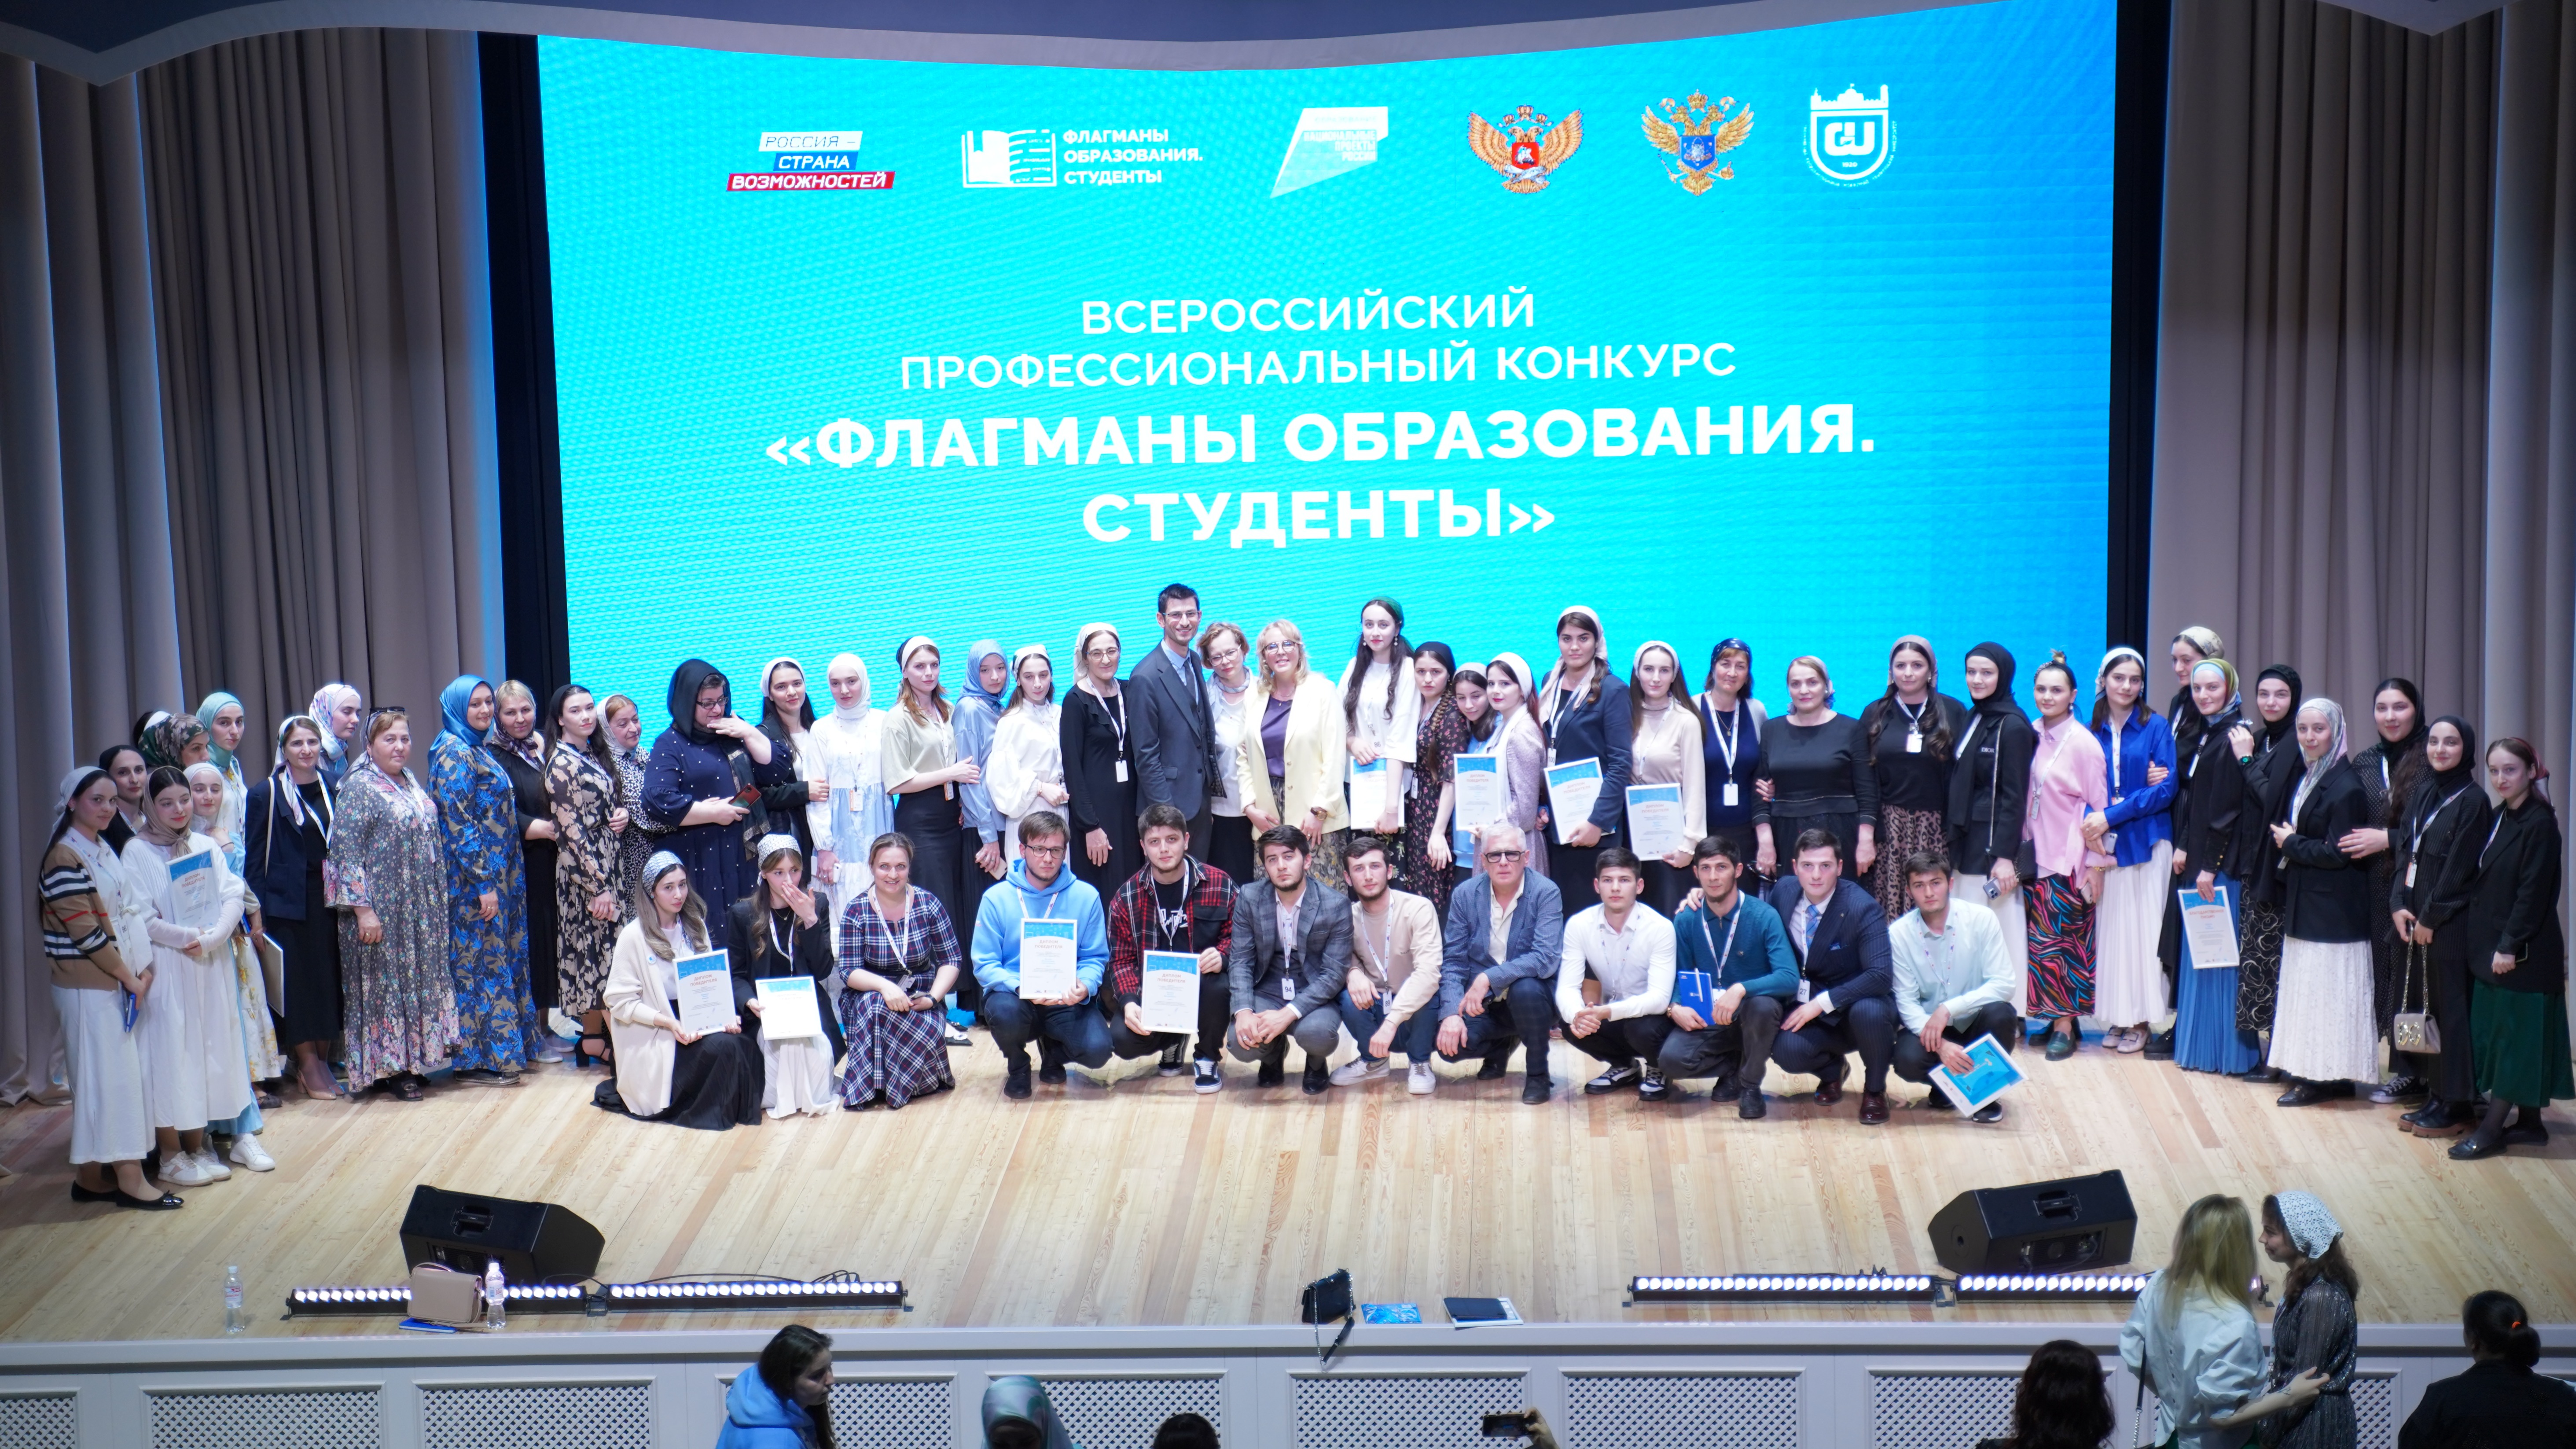 В Северо-Кавказском федеральном округе объявлены 19 финалистов конкурса «Флагманы образования. Студенты»